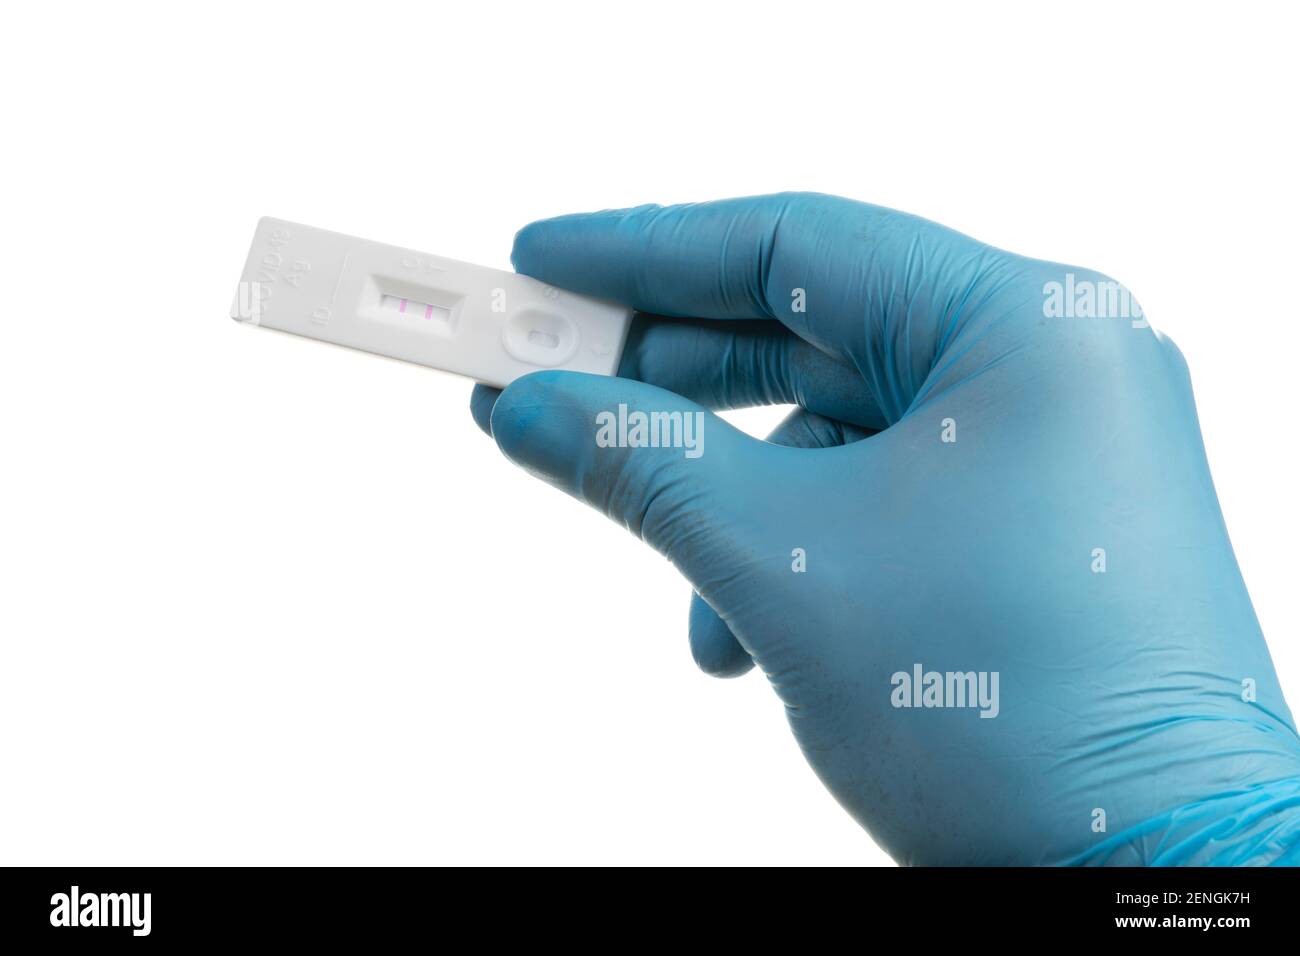 Guanti monouso con test antigenico rapido sars-COV-2 positivo isolato su sfondo bianco Foto Stock